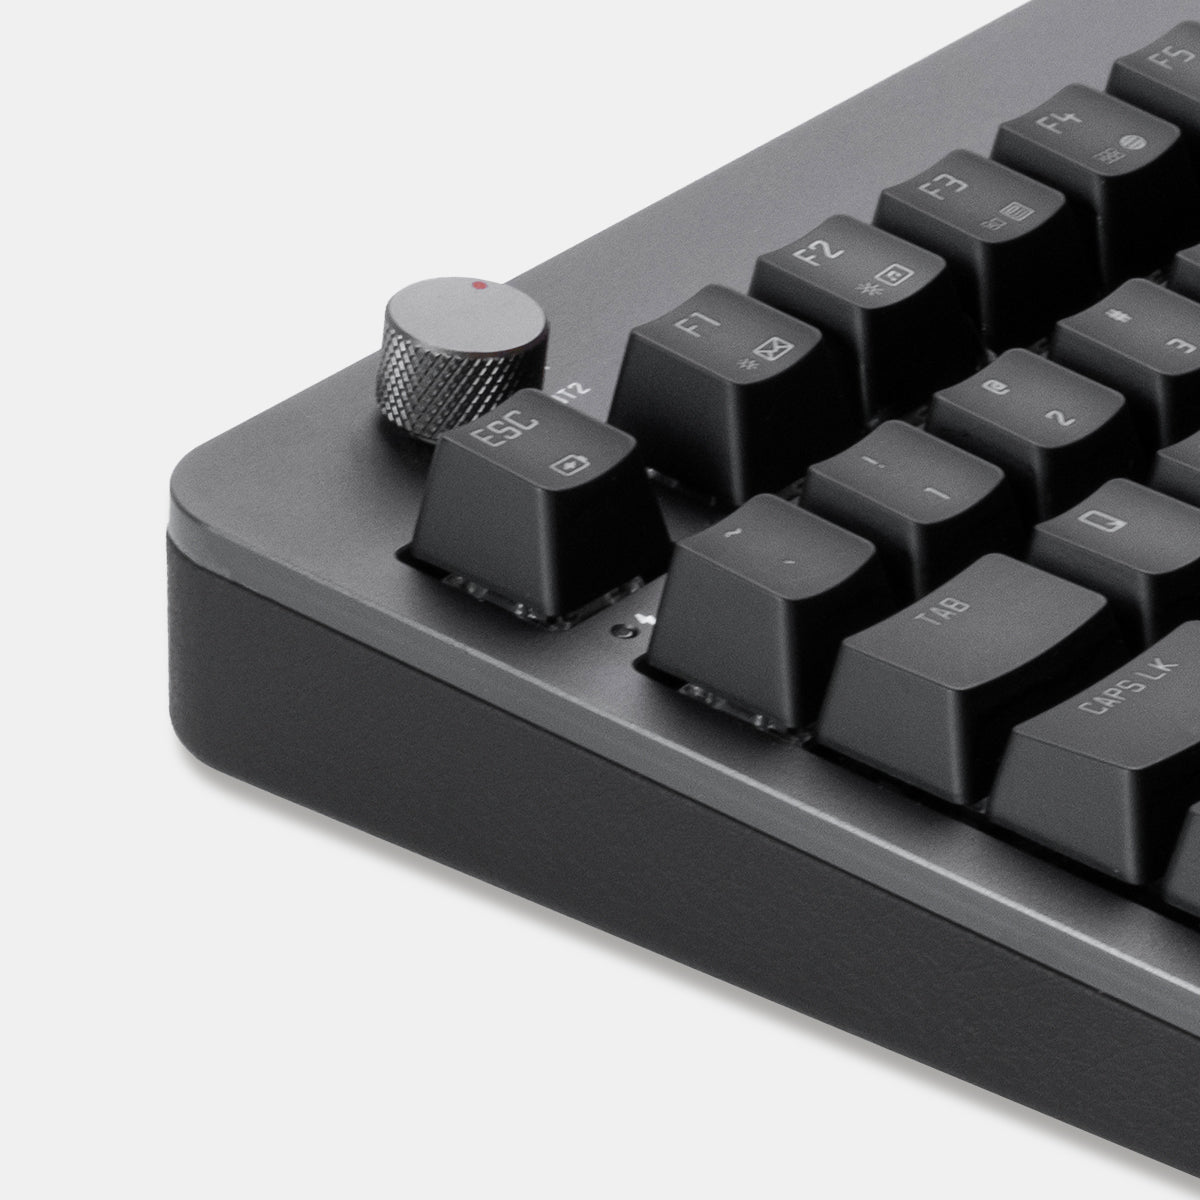 Drahtlose Foqo-Tastatur